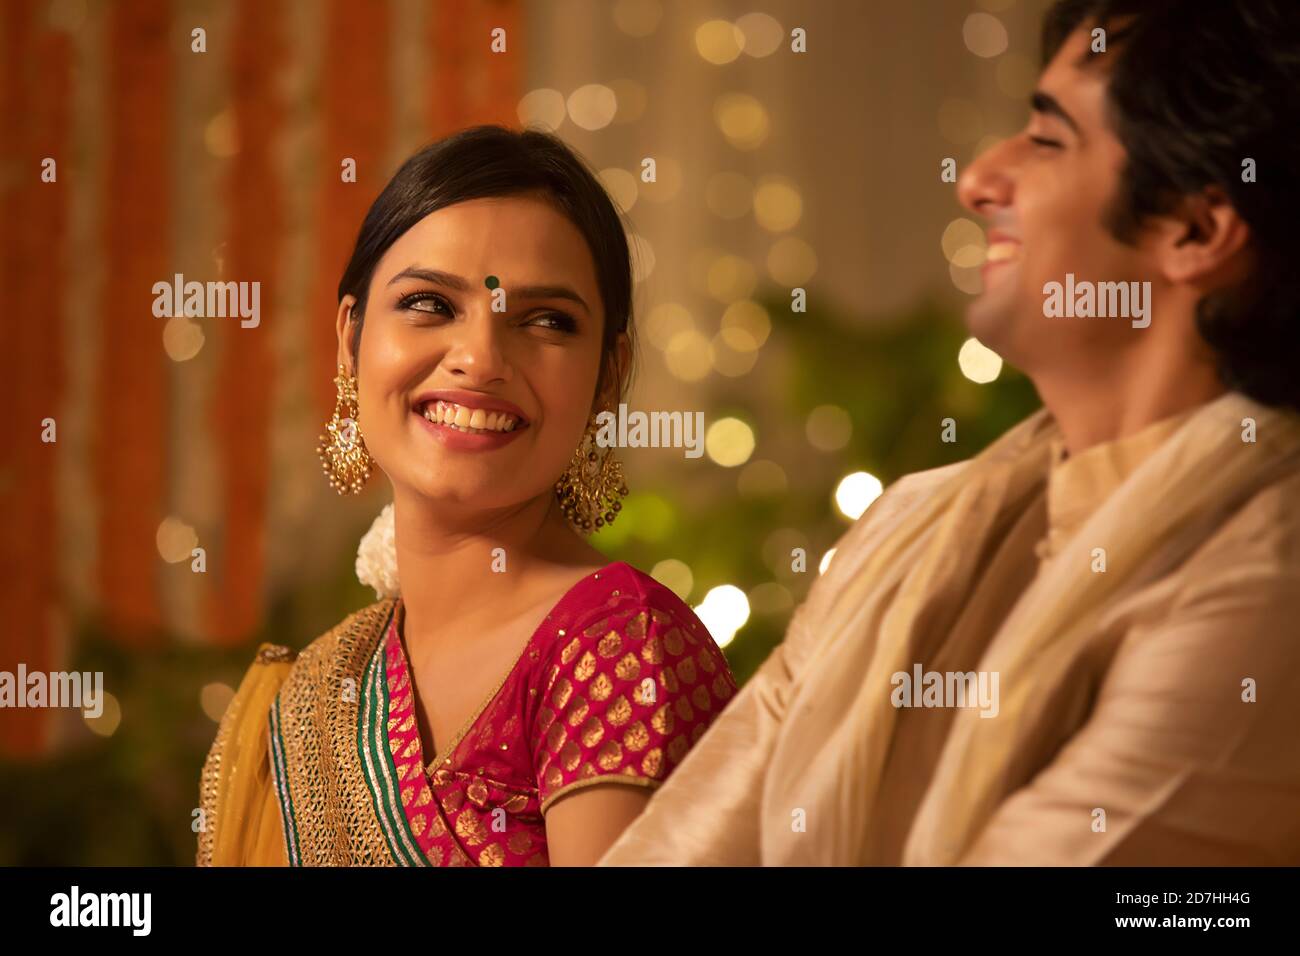 Bella ragazza che condivide una risata insieme con un uomo a. una festa di diwali Foto Stock